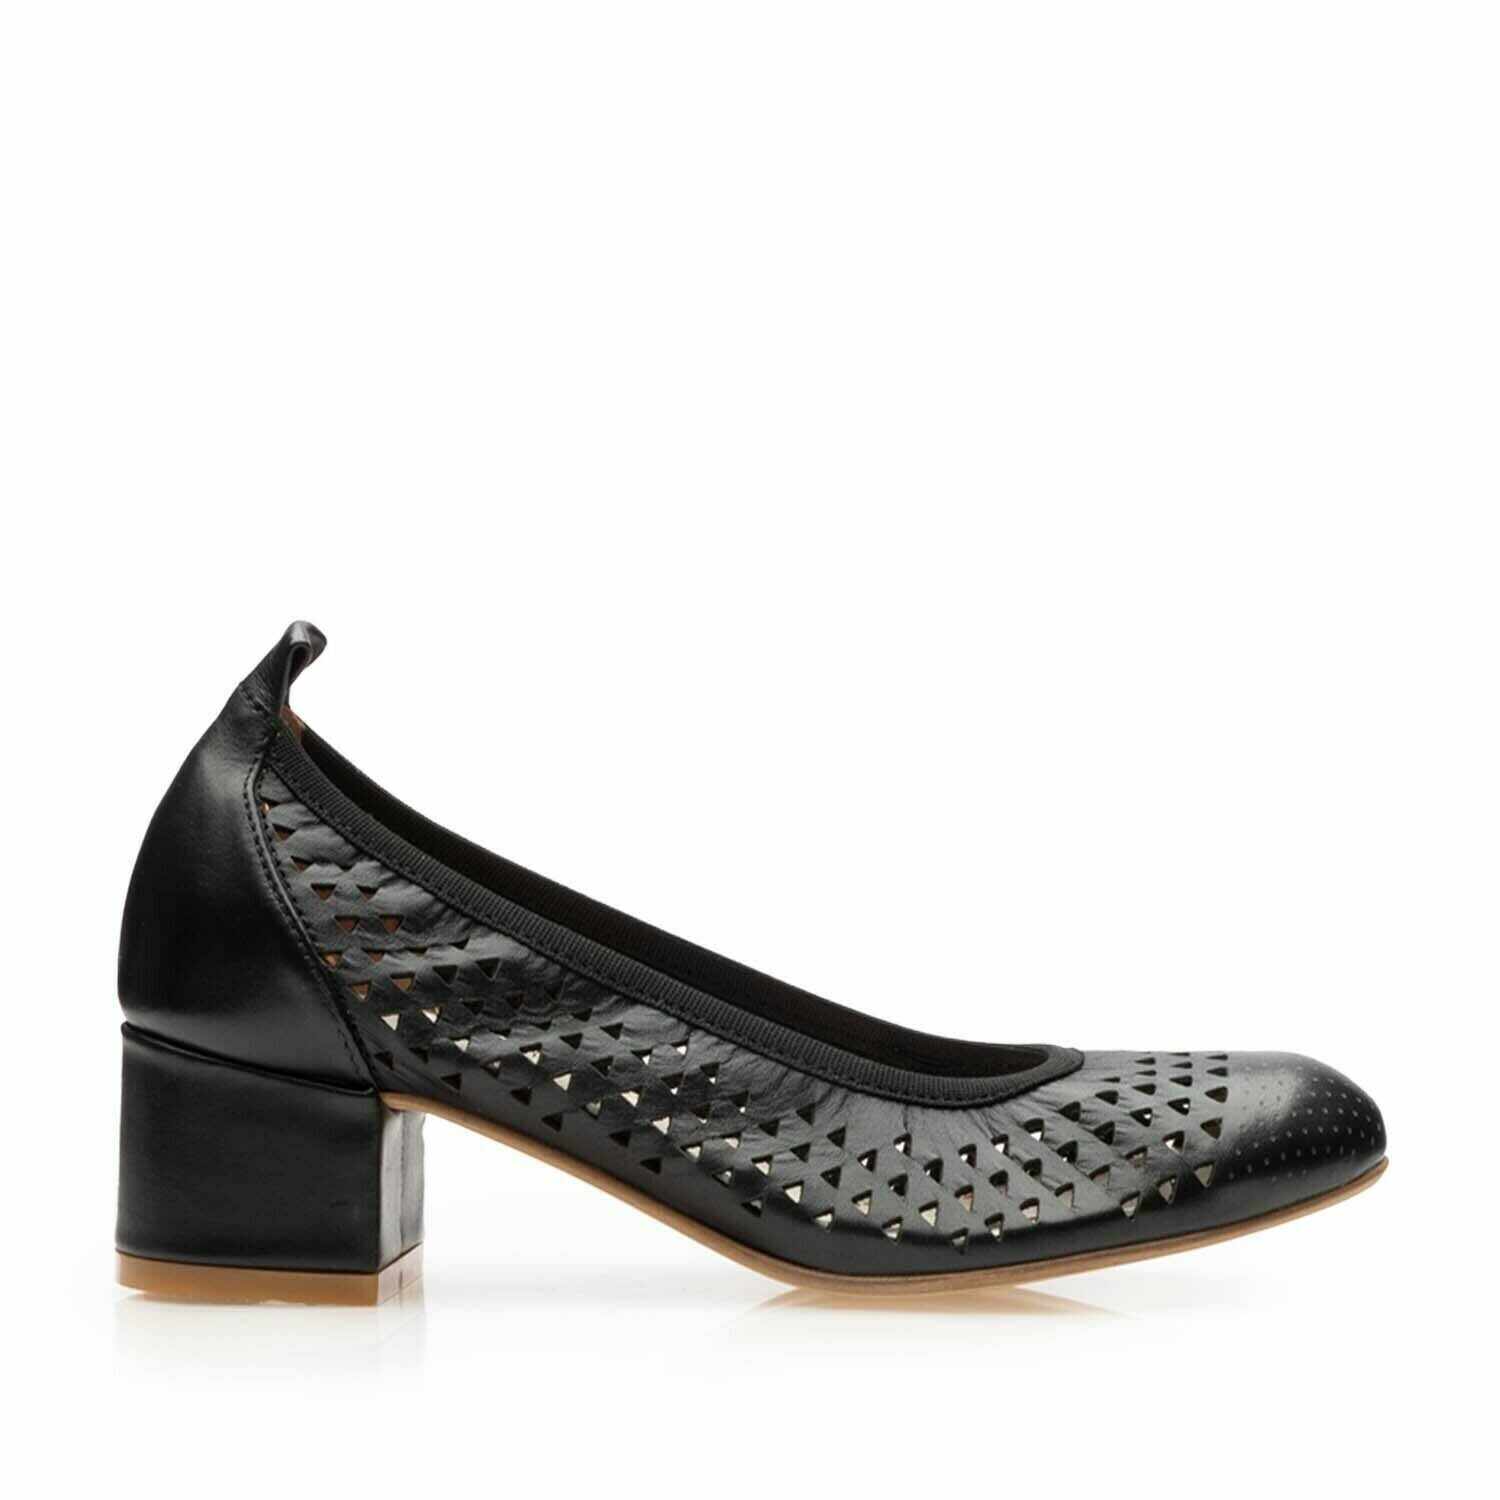 Pantofi casual cu toc damă, perforati din piele naturală, Leofex - 248 Negru box